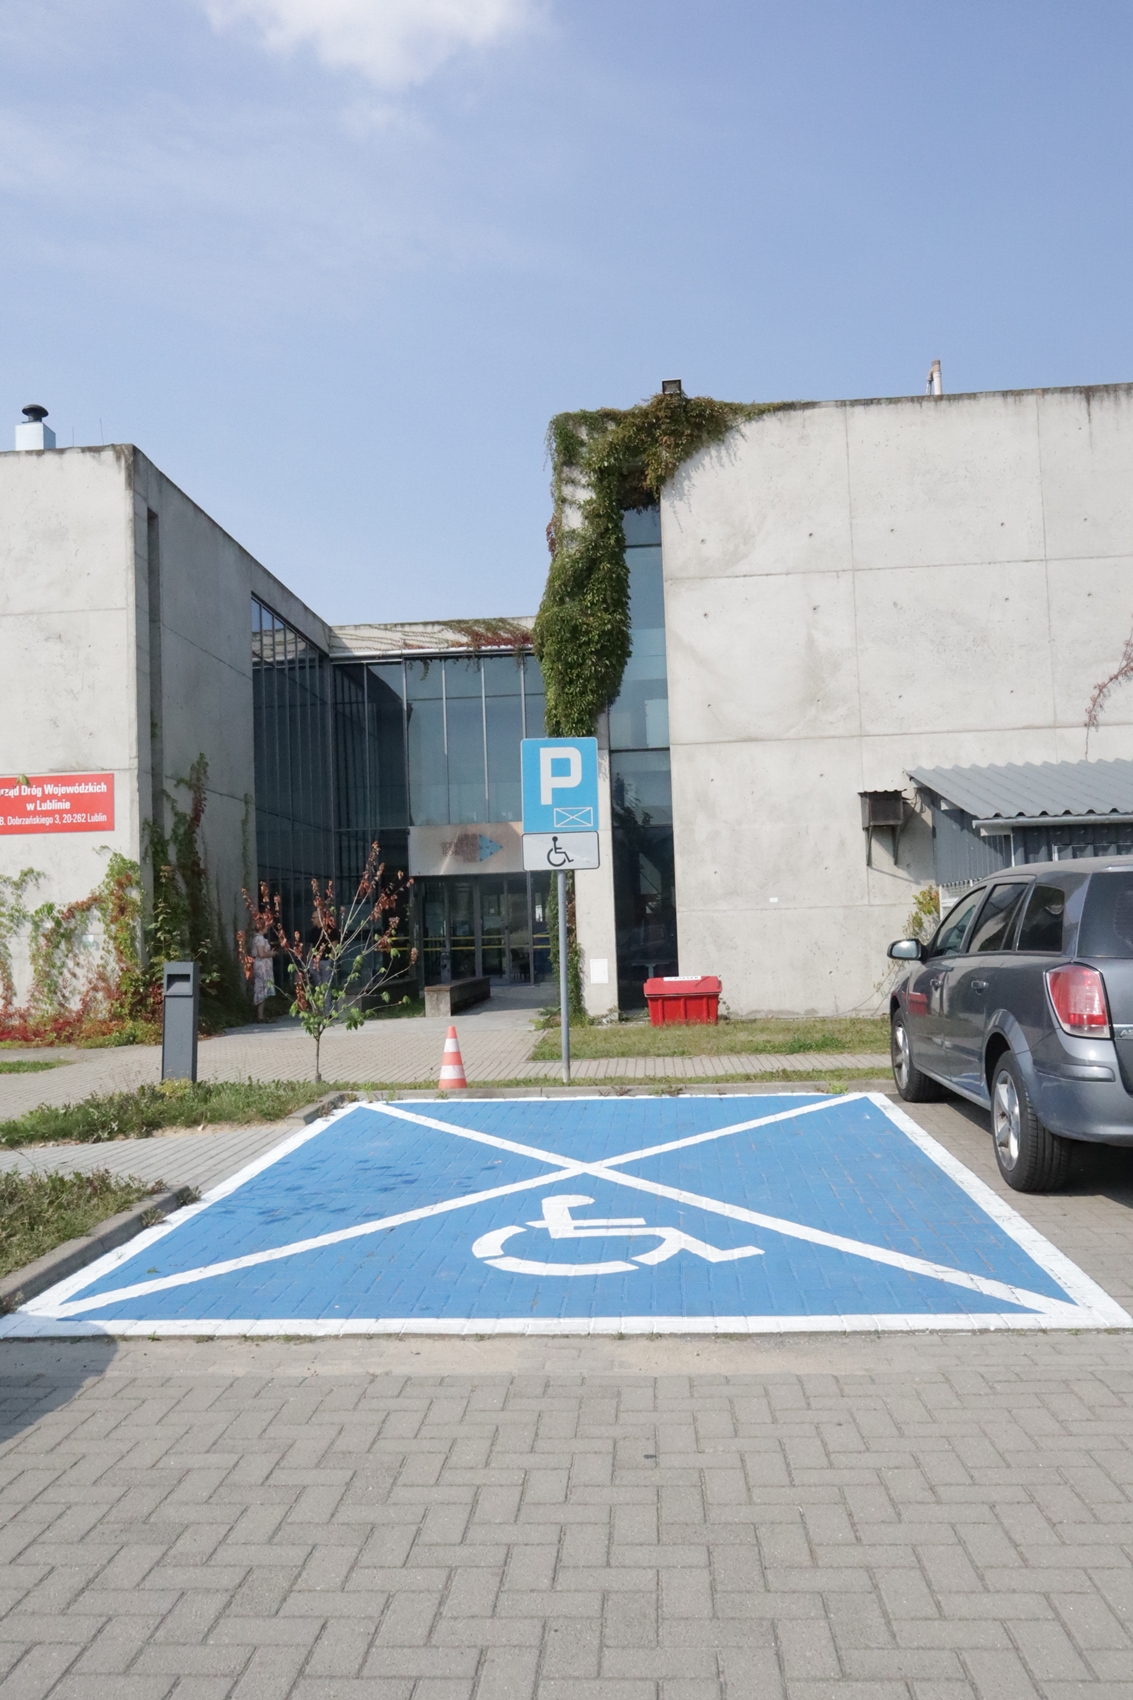 Na zdjęciu widzimy miejsce parkingowe dostosowane dla osób ze specjalnymi potrzebami. Miejsce to znajduje się około 12 metrów od wejścia głównego do budynku. Miejsce parkingowe oznaczone jest kolorem niebieskim oraz namalowanym białym znakiem X a także oznaczeniem osoby poruszającej się na wózku.